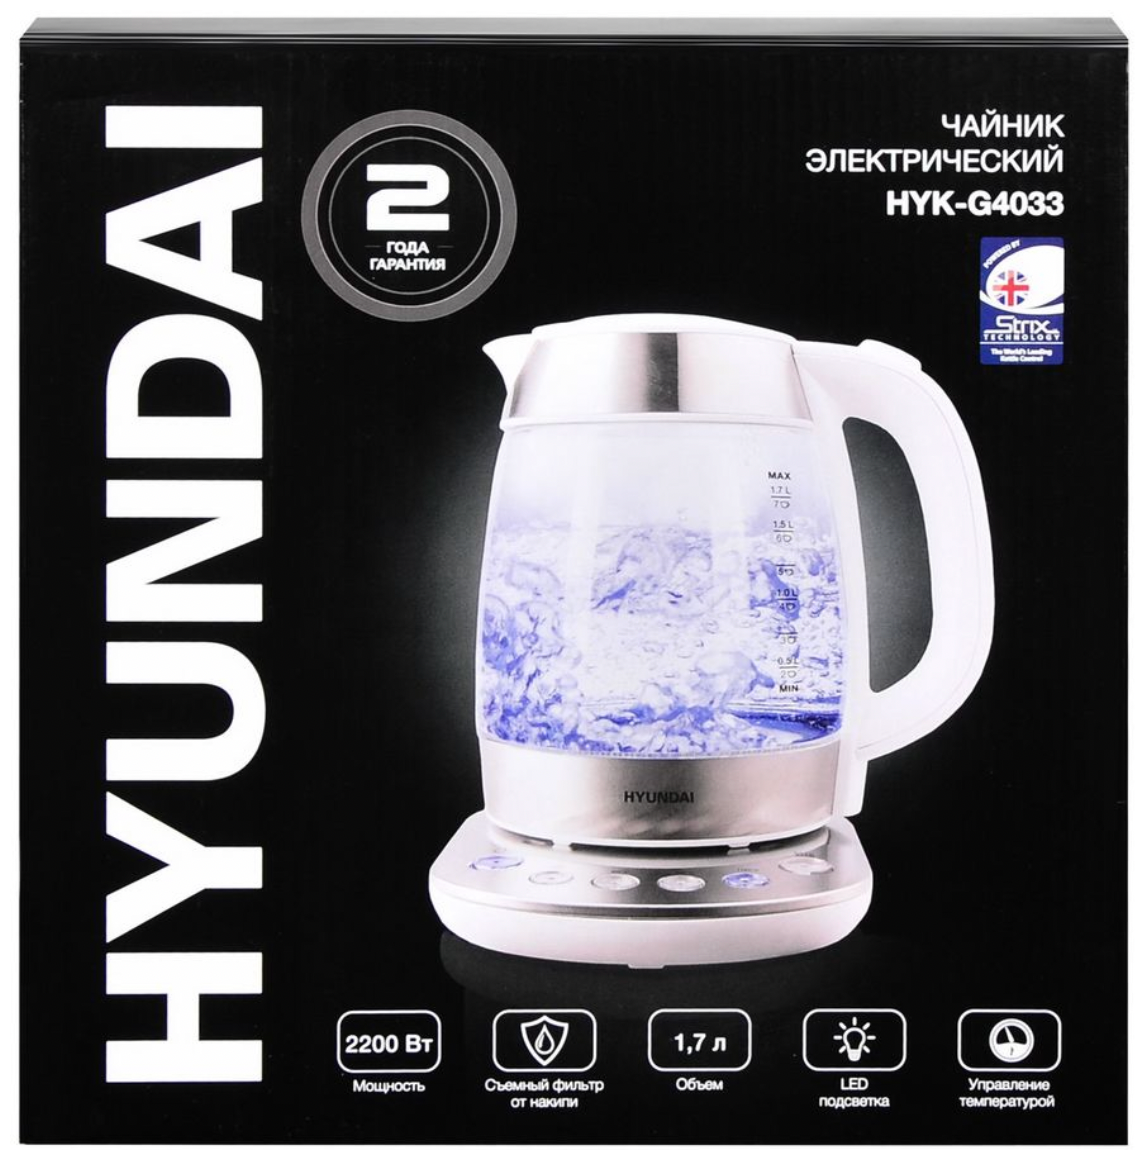 Чайник электрический Hyundai, чайник мощностью 2200Вт, чайник с выбором температуры воды, чайник объемом 1,7л, чайник бело-серебристого цвета - фотография № 9